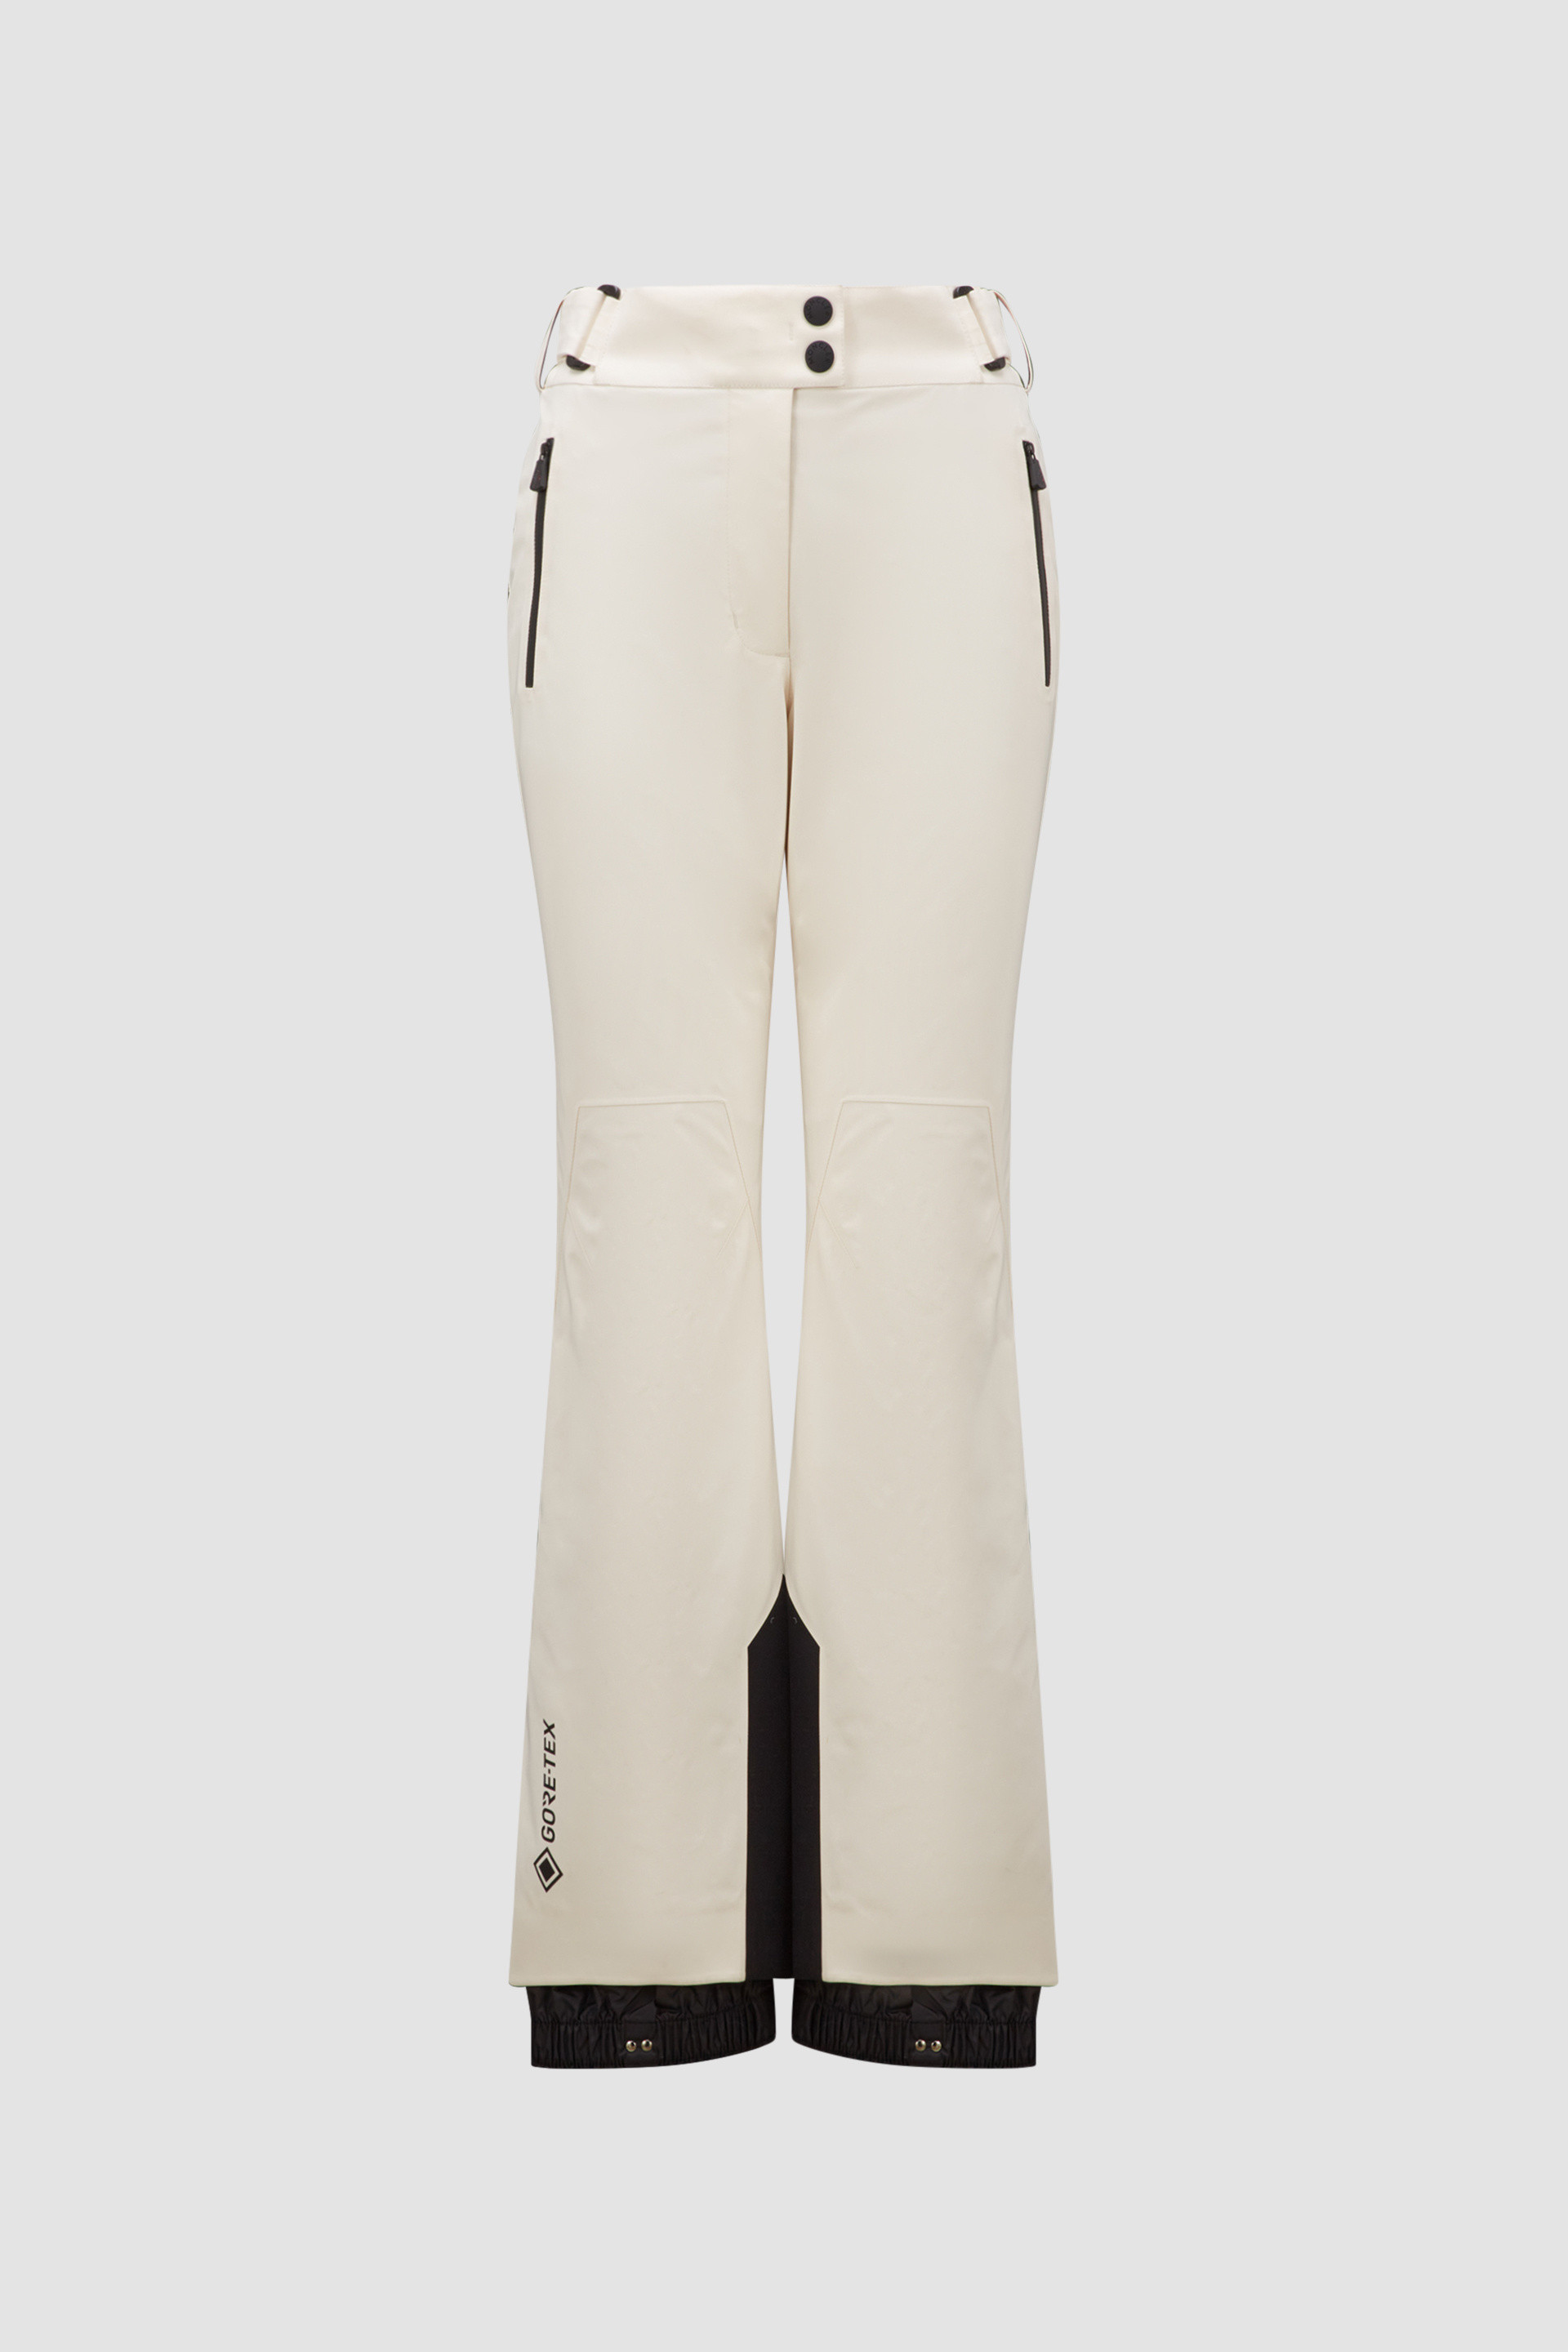 Hyra Women's Marmore Recco Ski Pant - White 